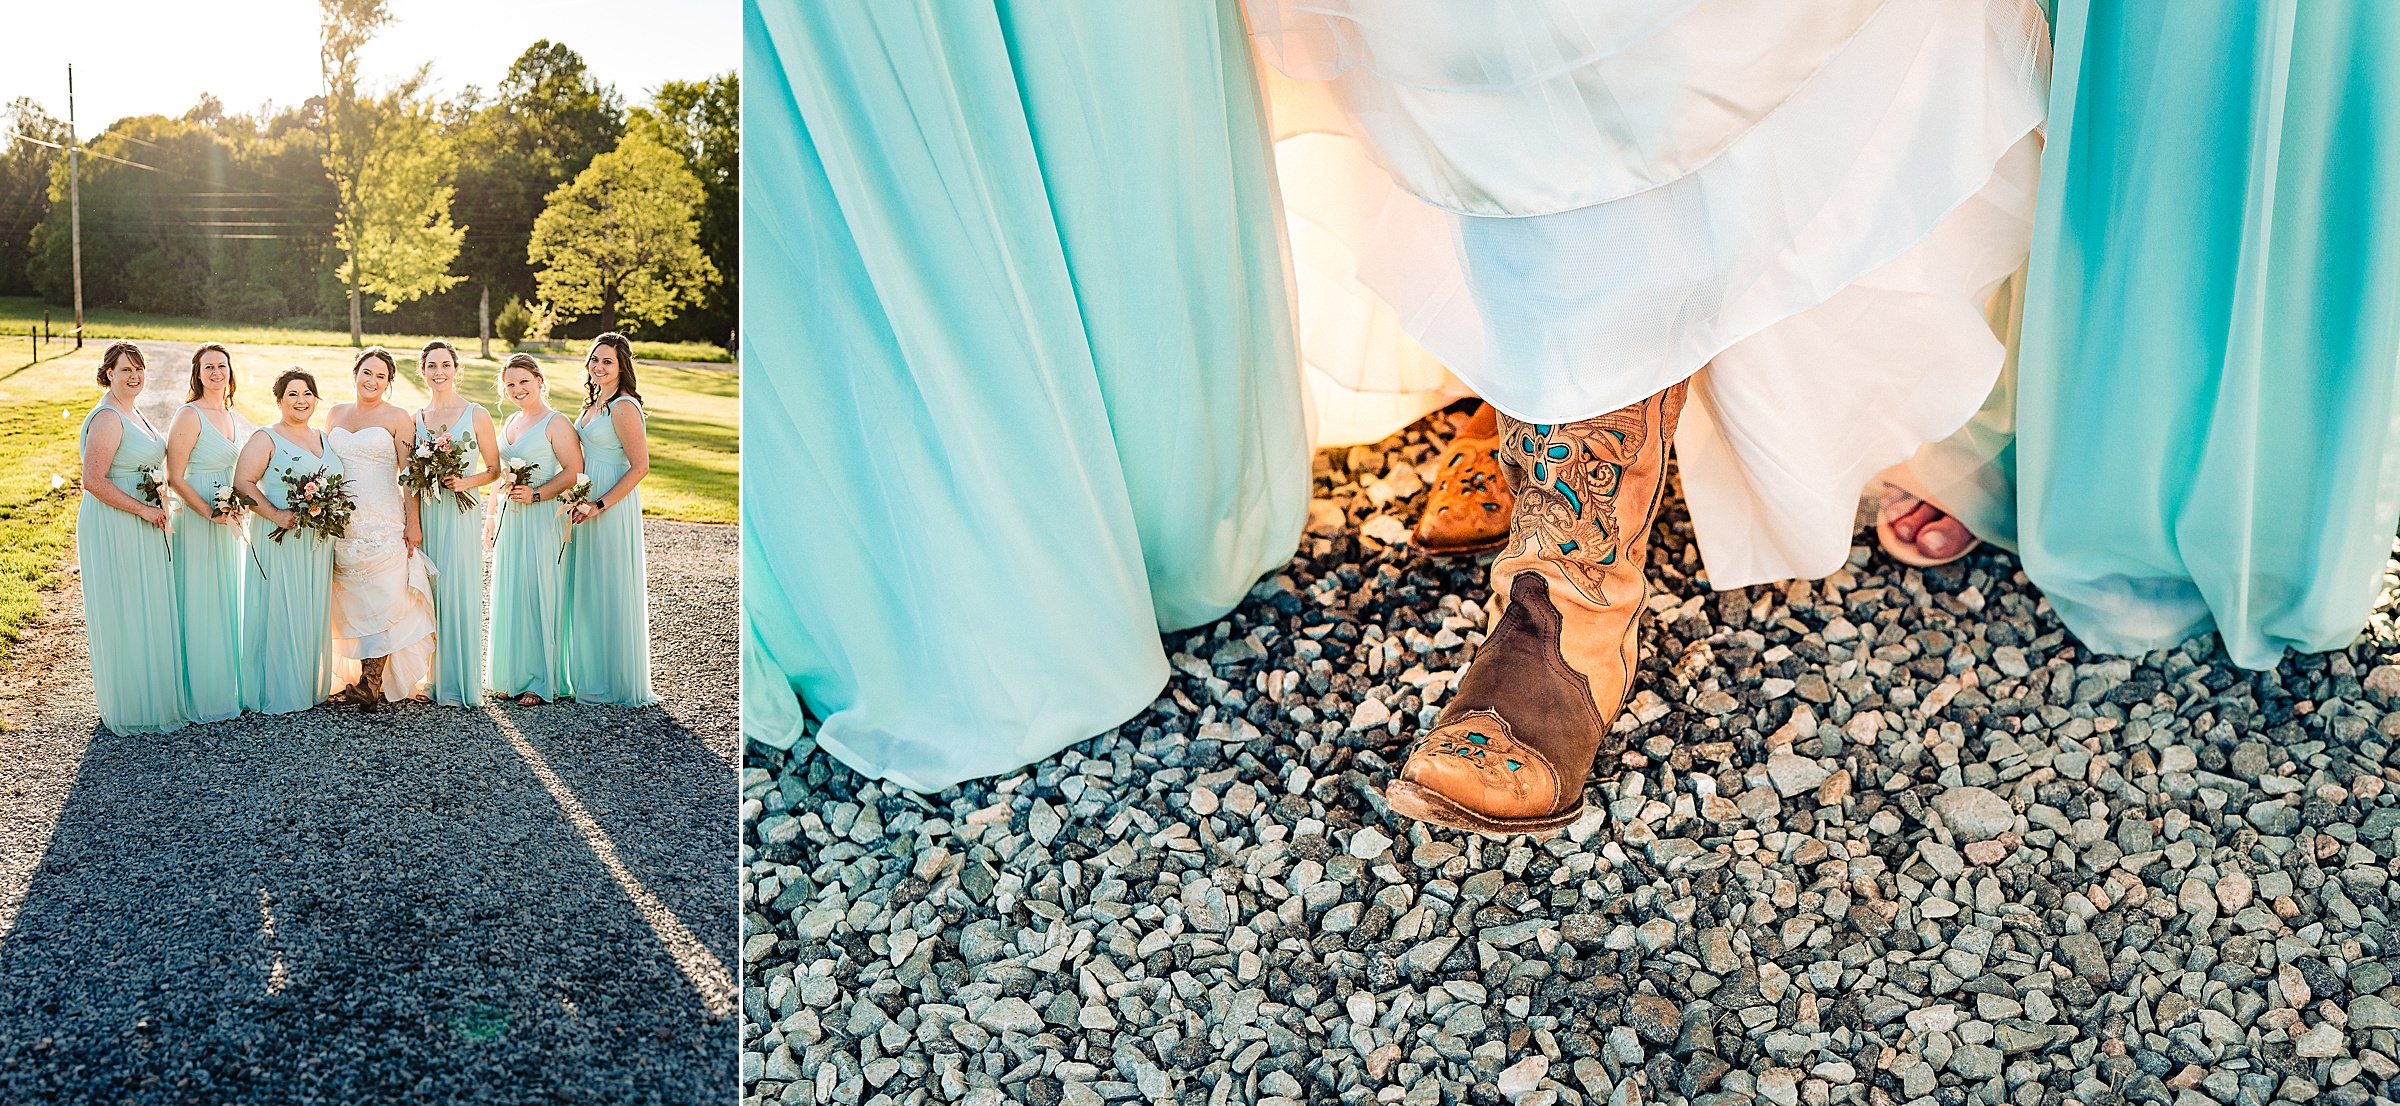 Bride in cowboy boots